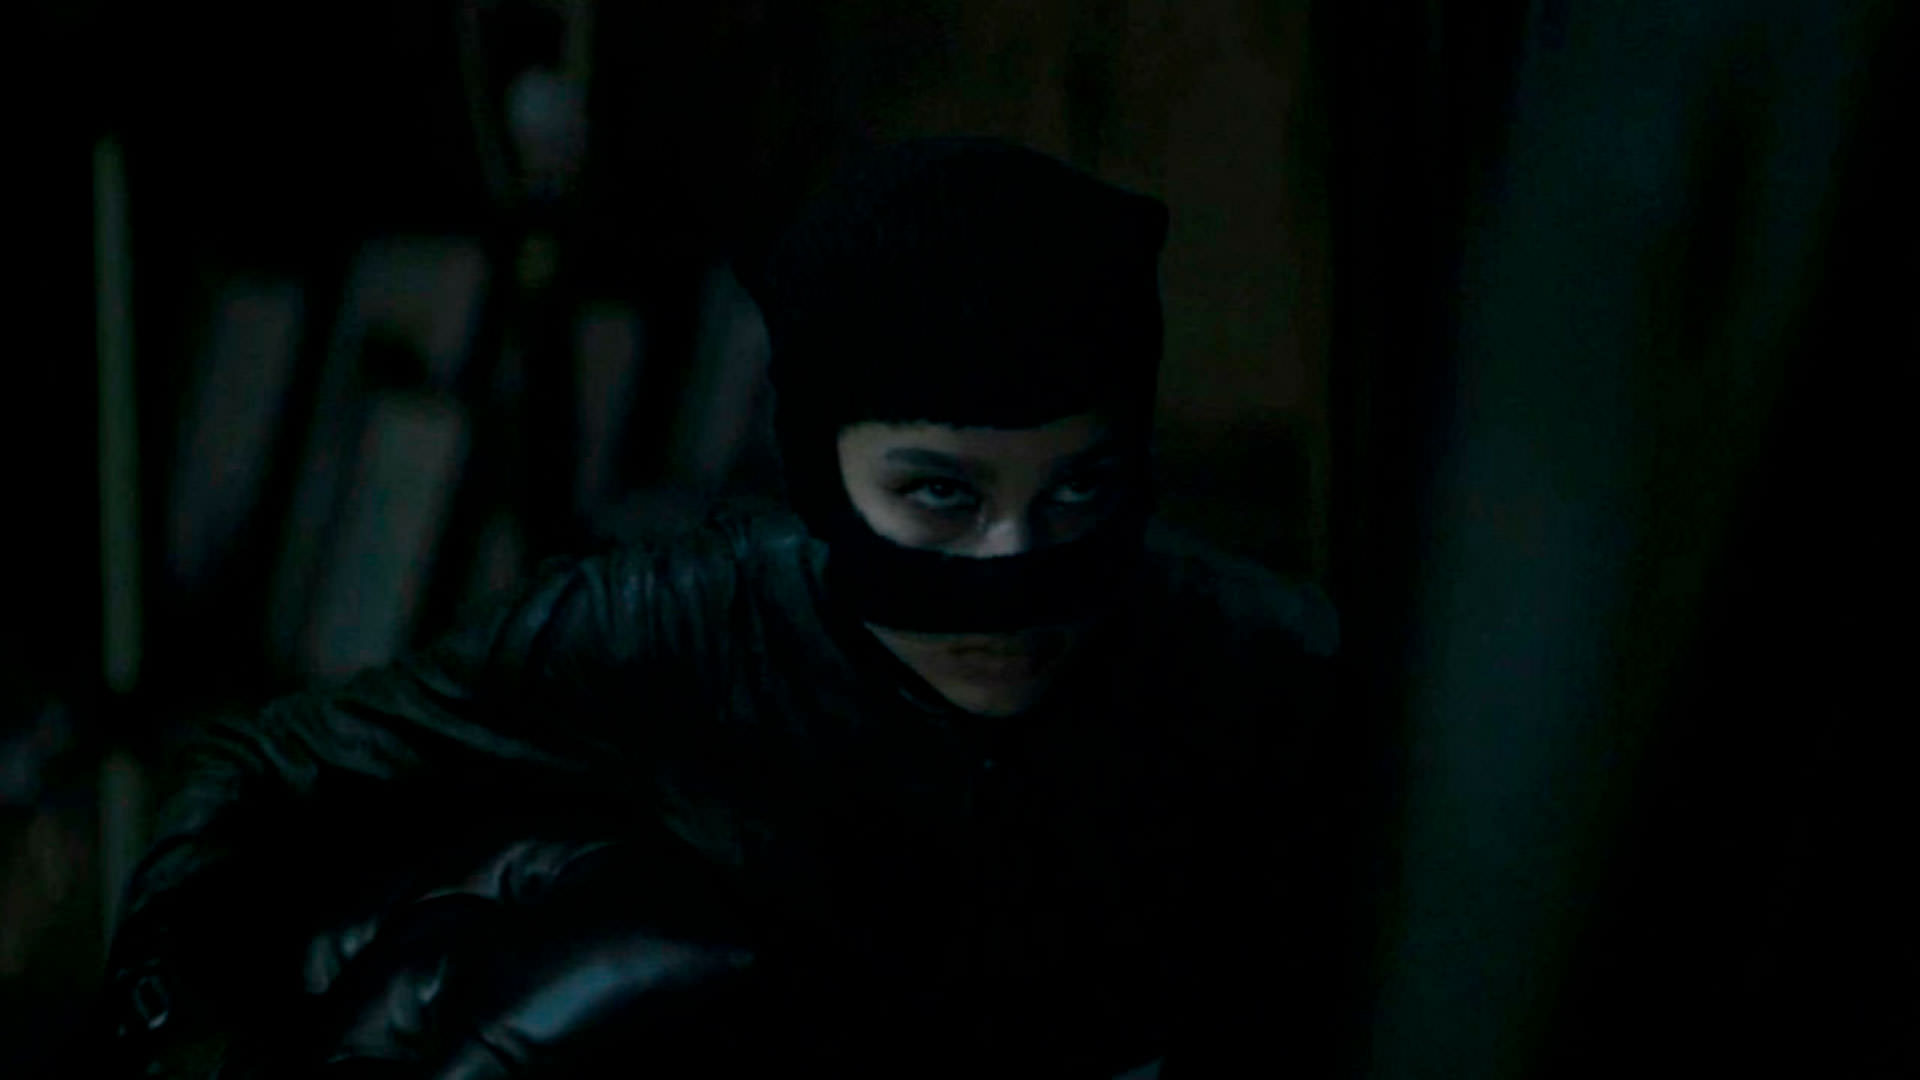 زوئی کراویتز در نقش زن گربه ای در فیلم The Batman